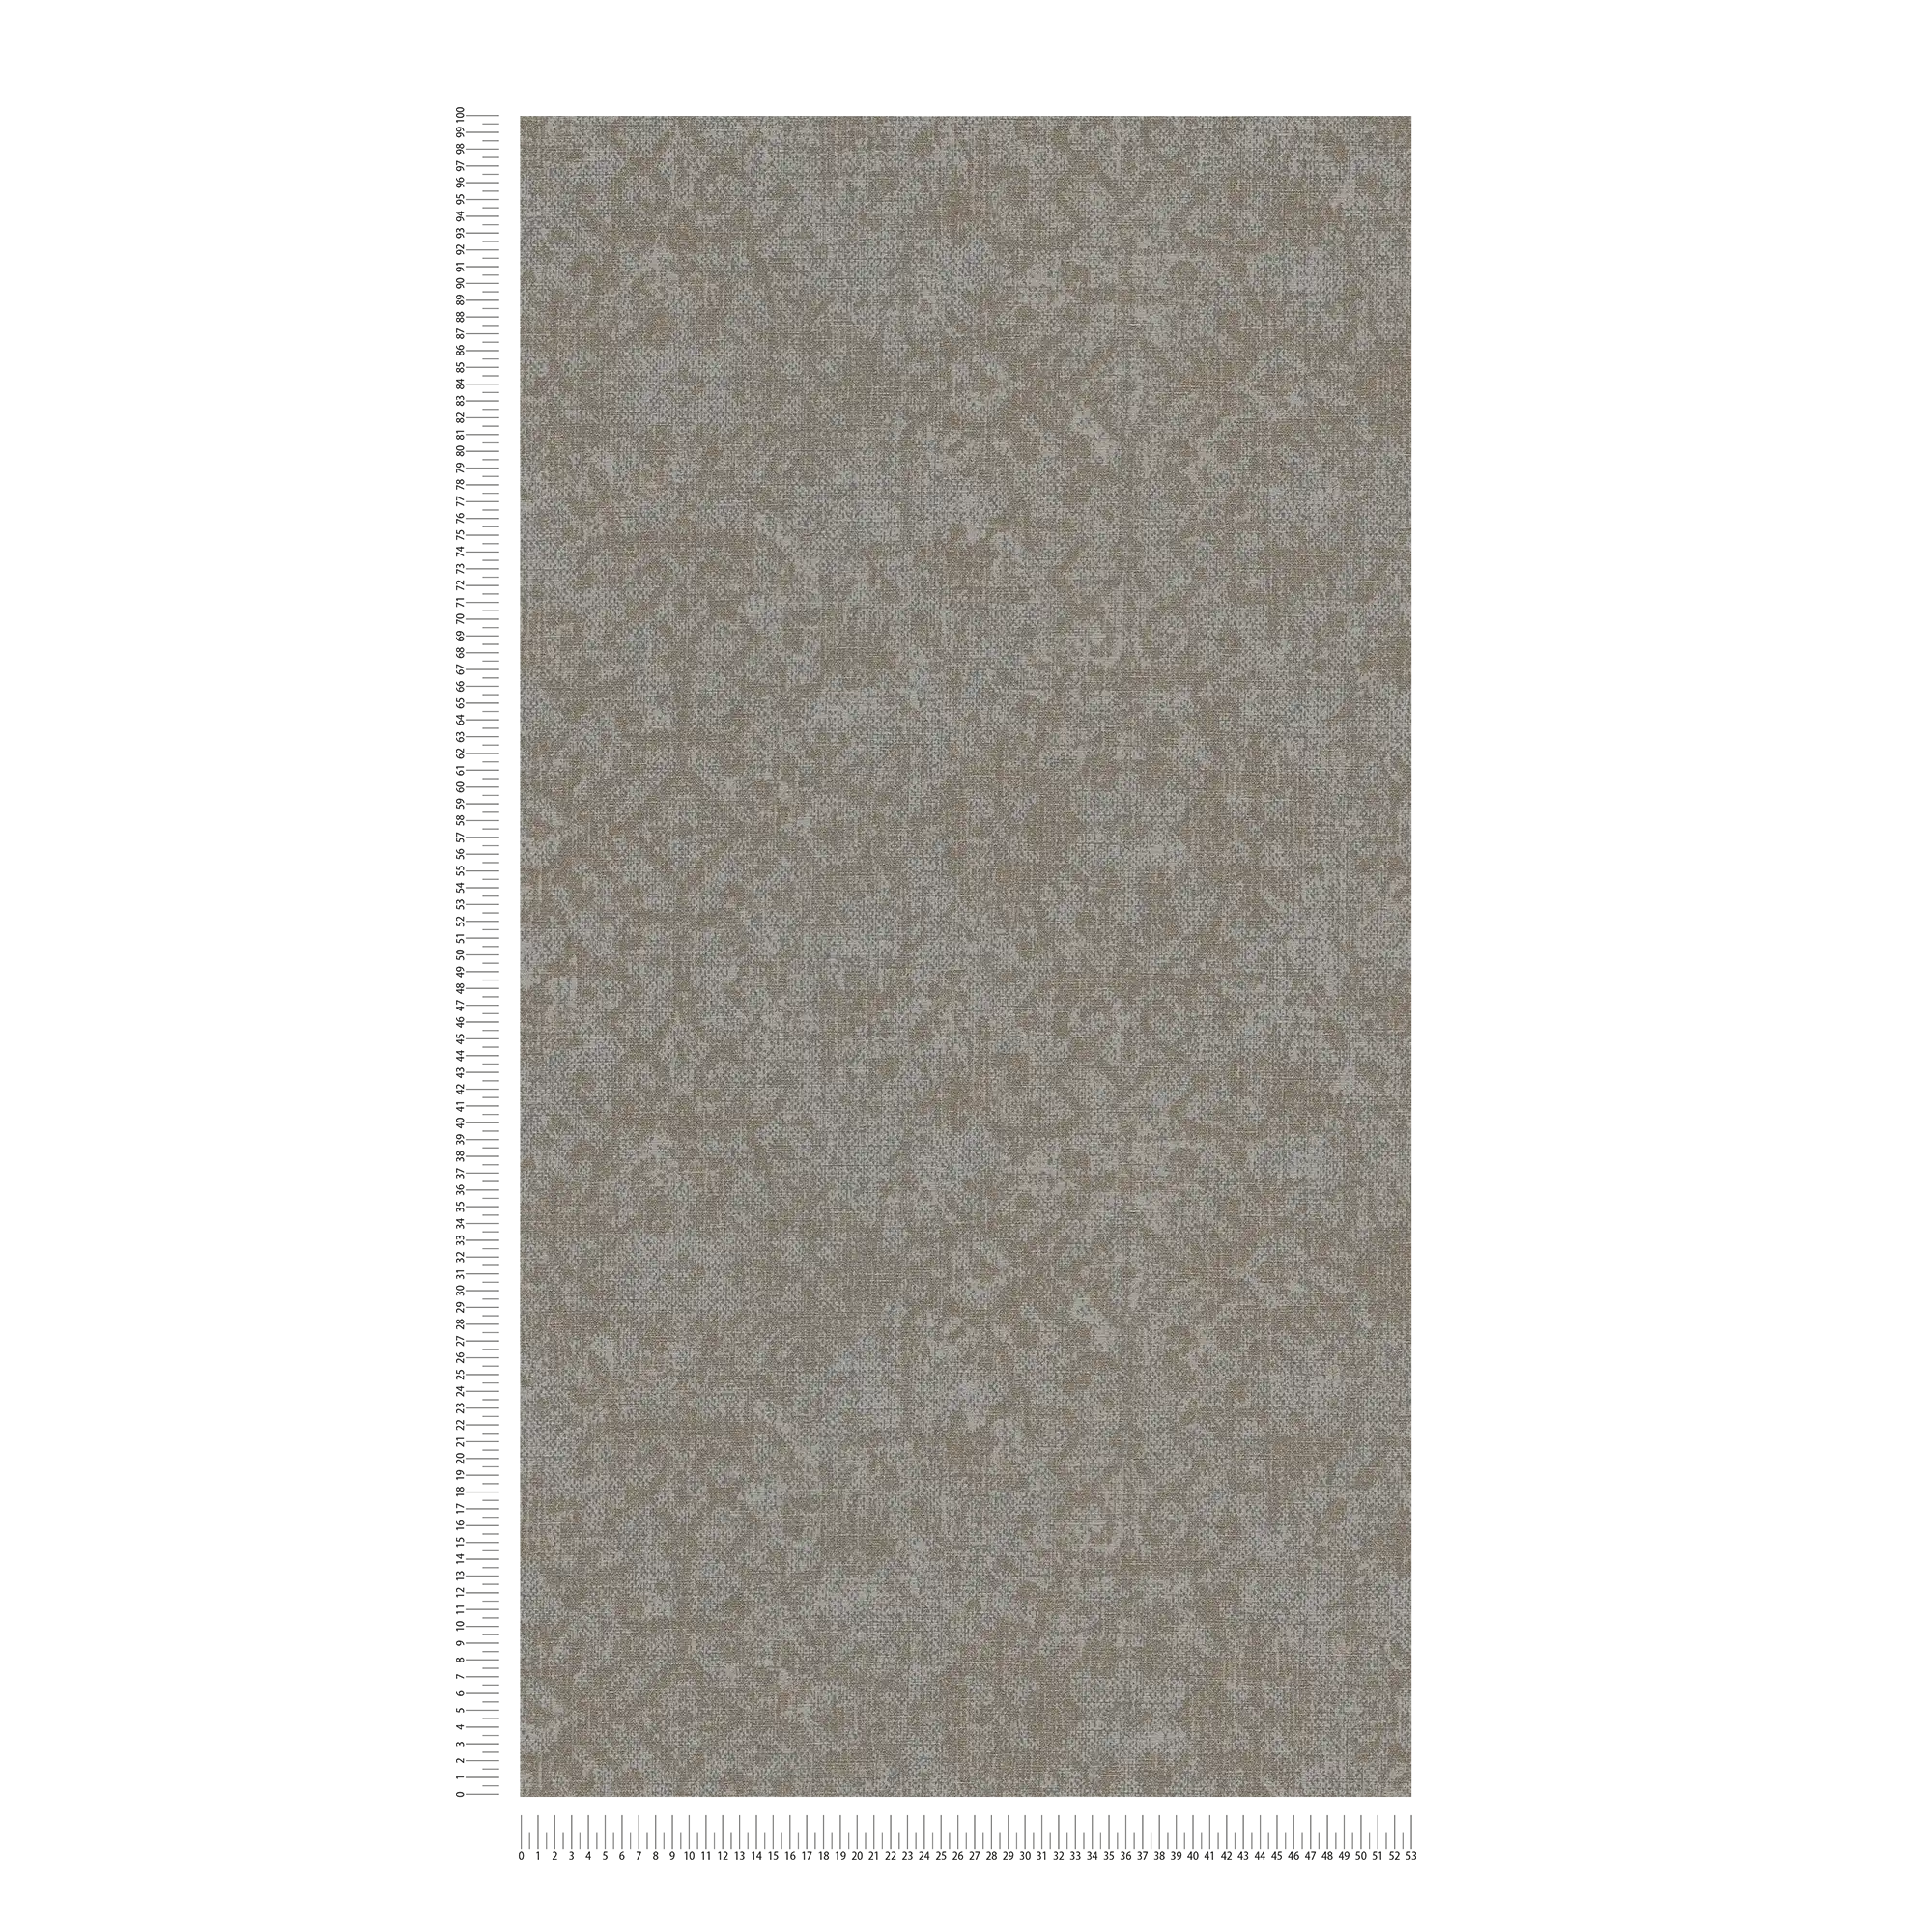             Papier peint ethnique gris-brun avec brocart aspect textile
        